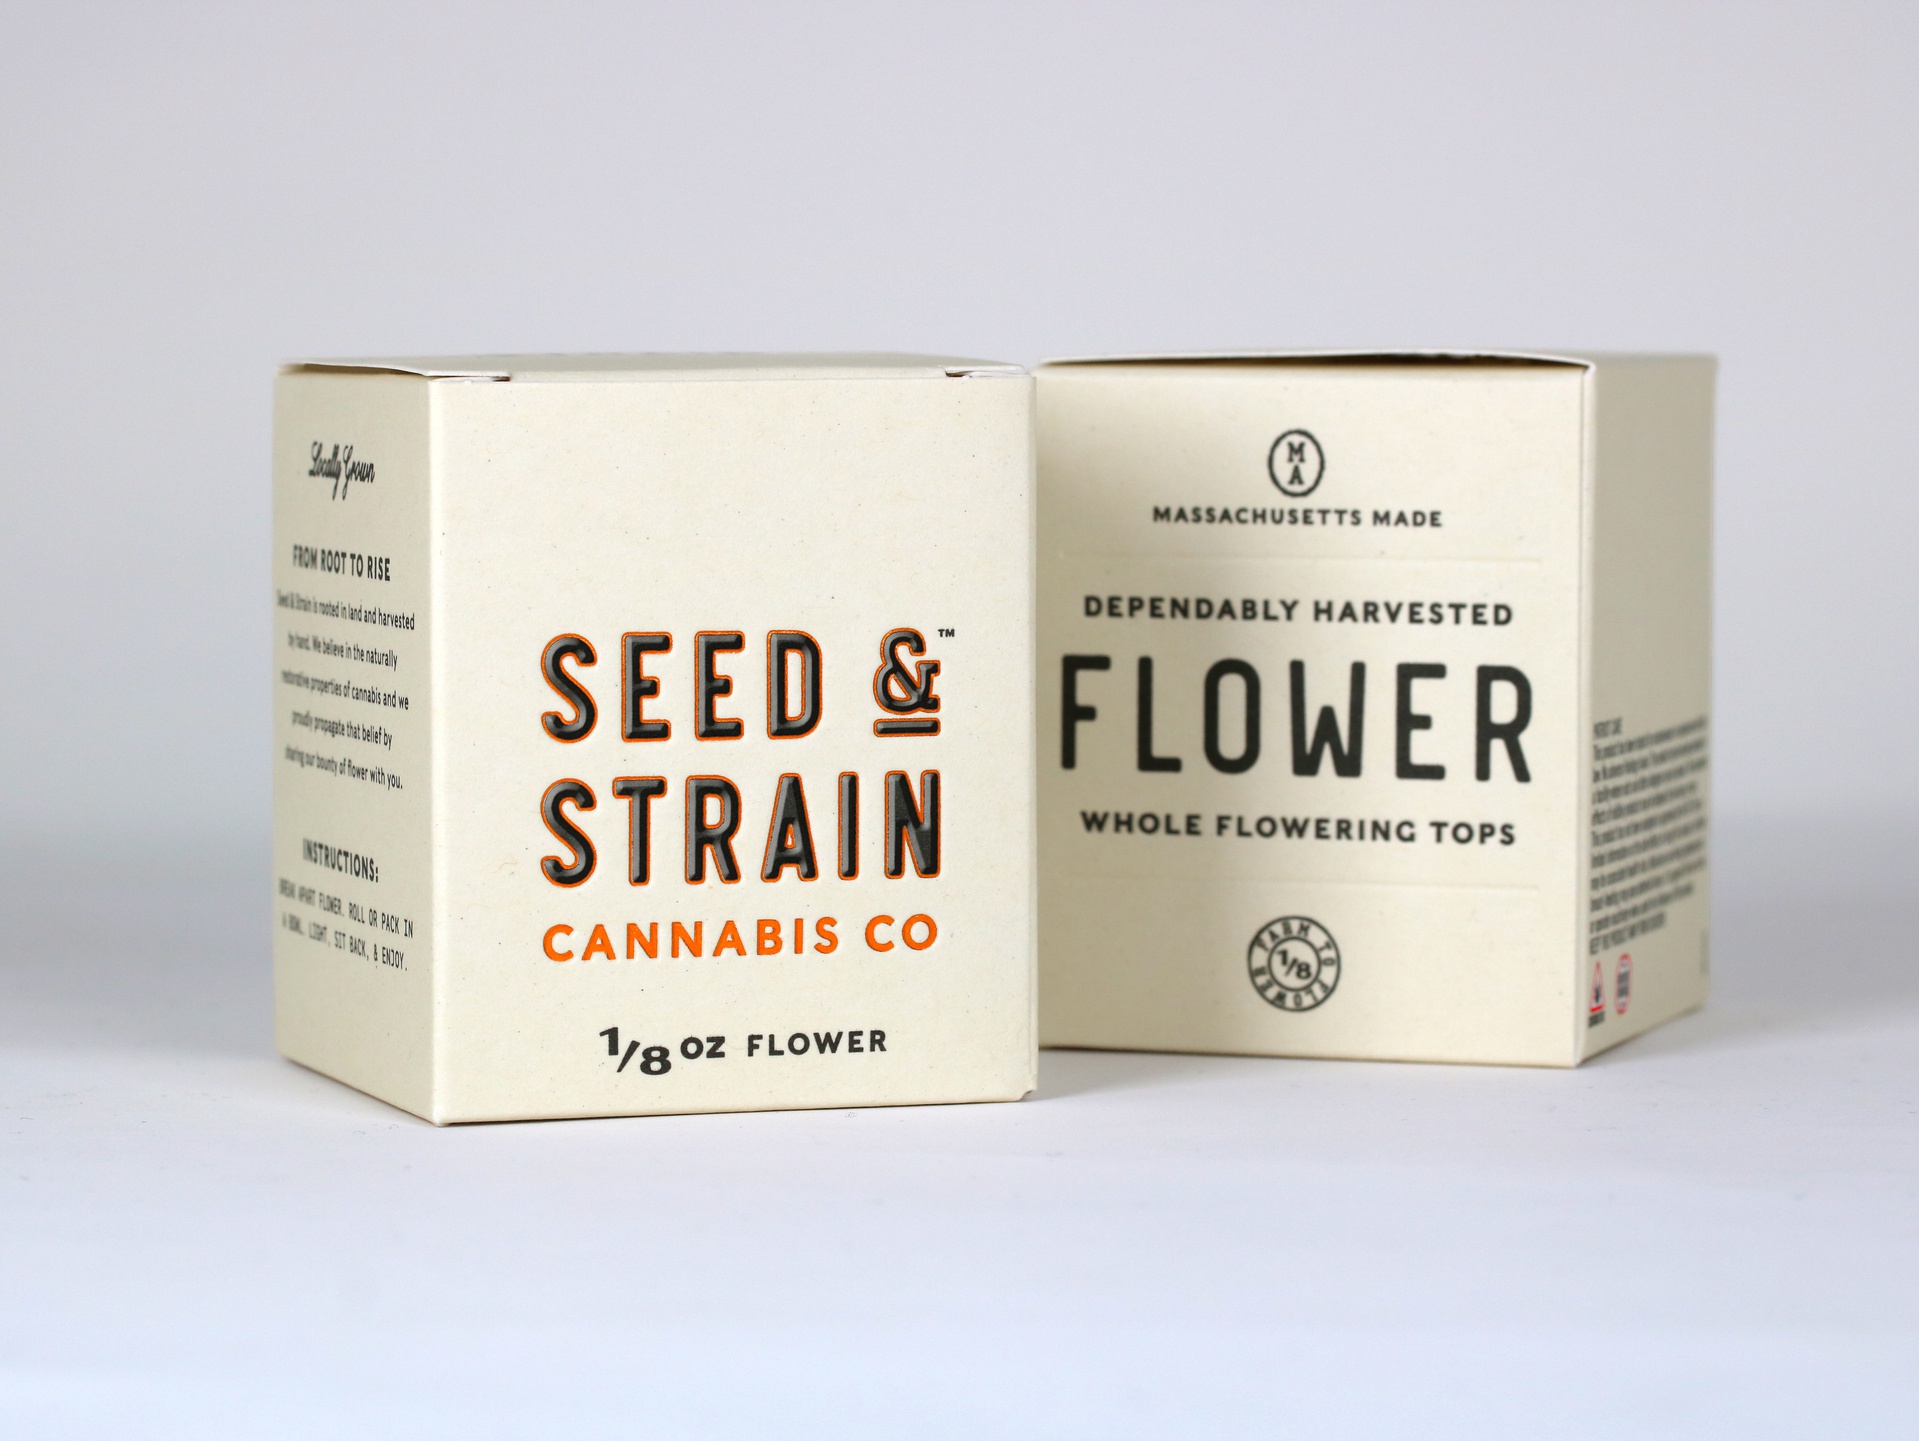 Seed & Strain cannabis packaging